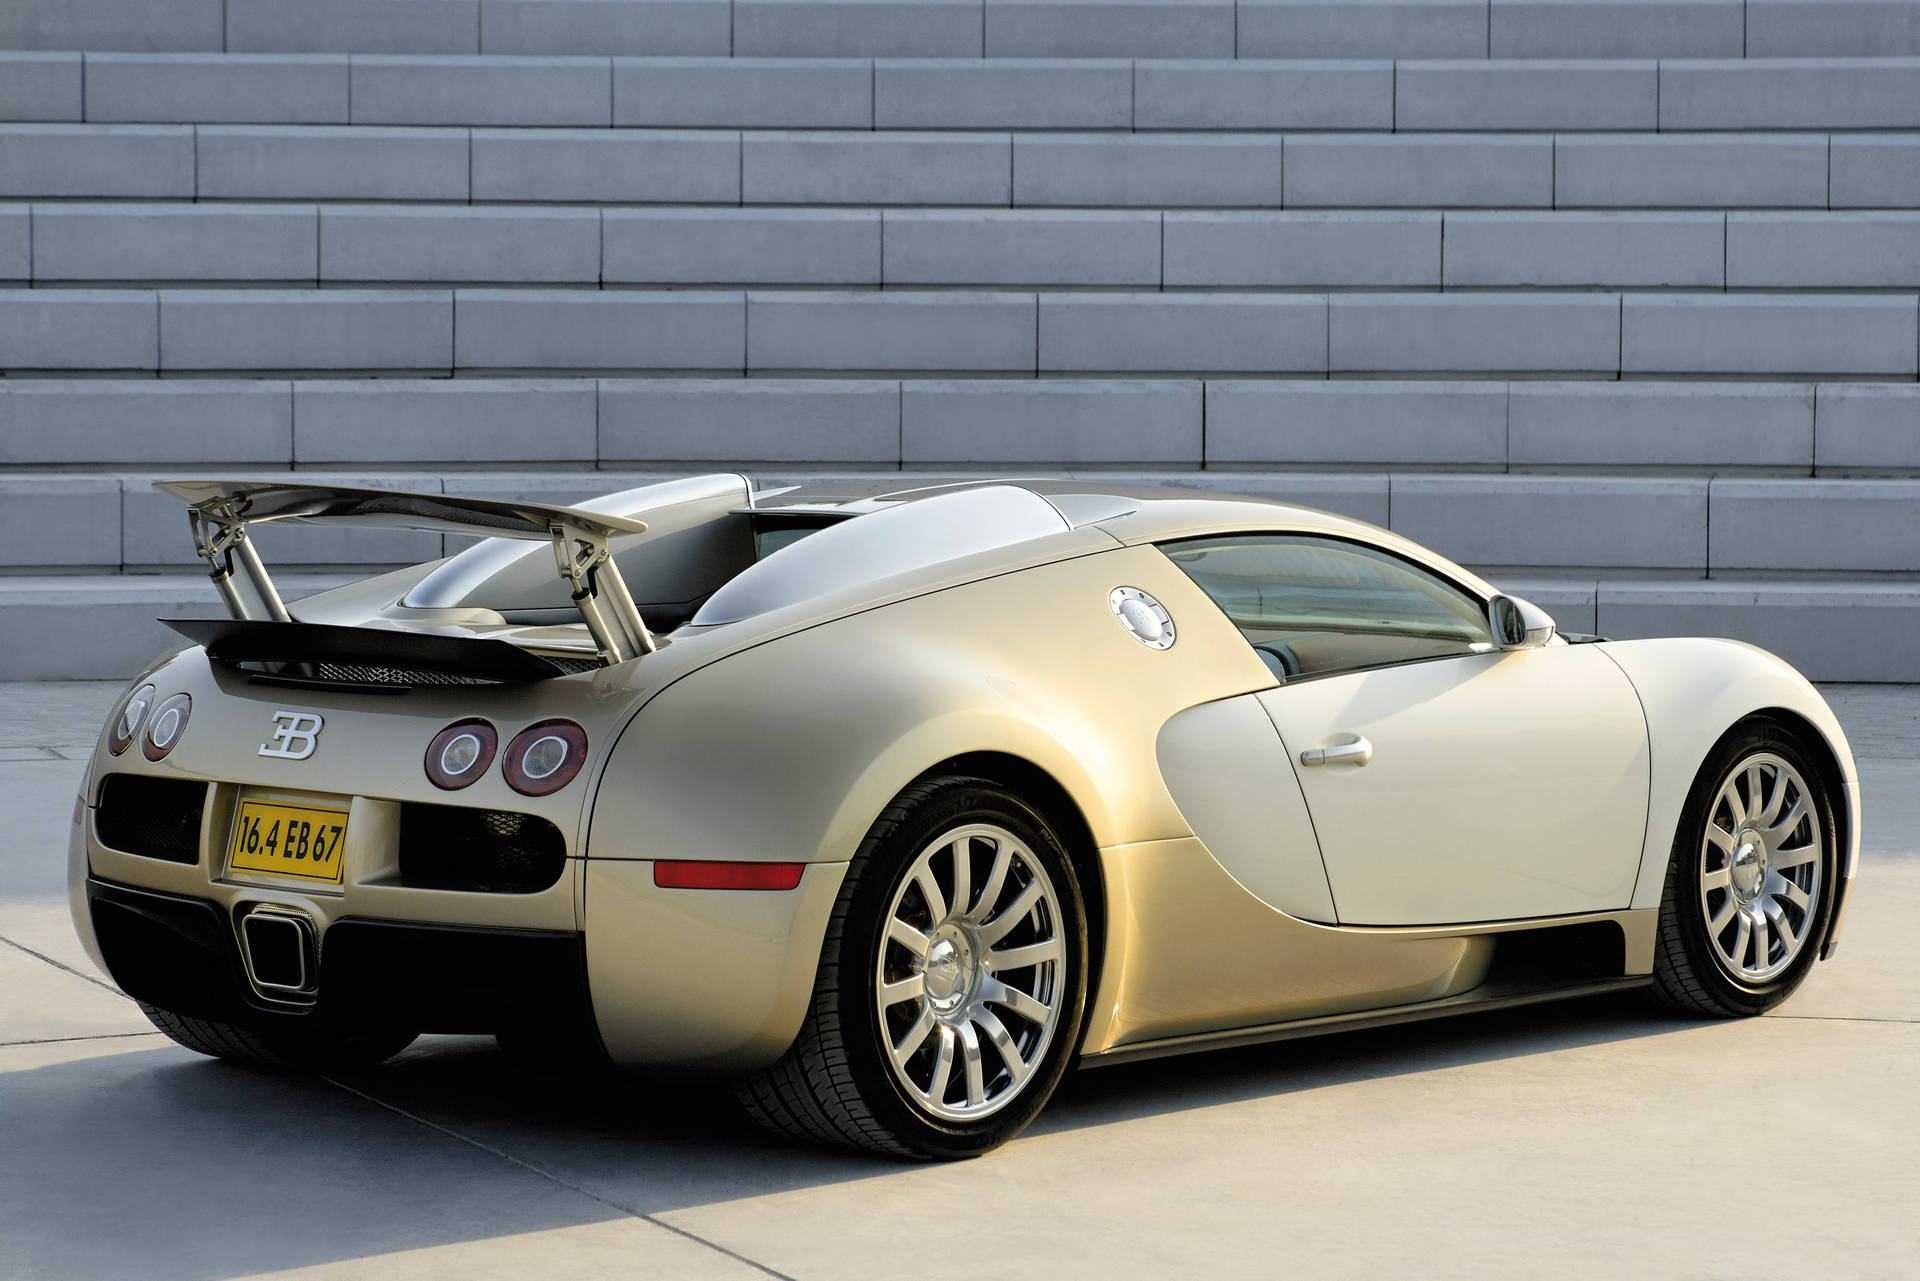 3000X2001 Bugatti Wallpaper and Background